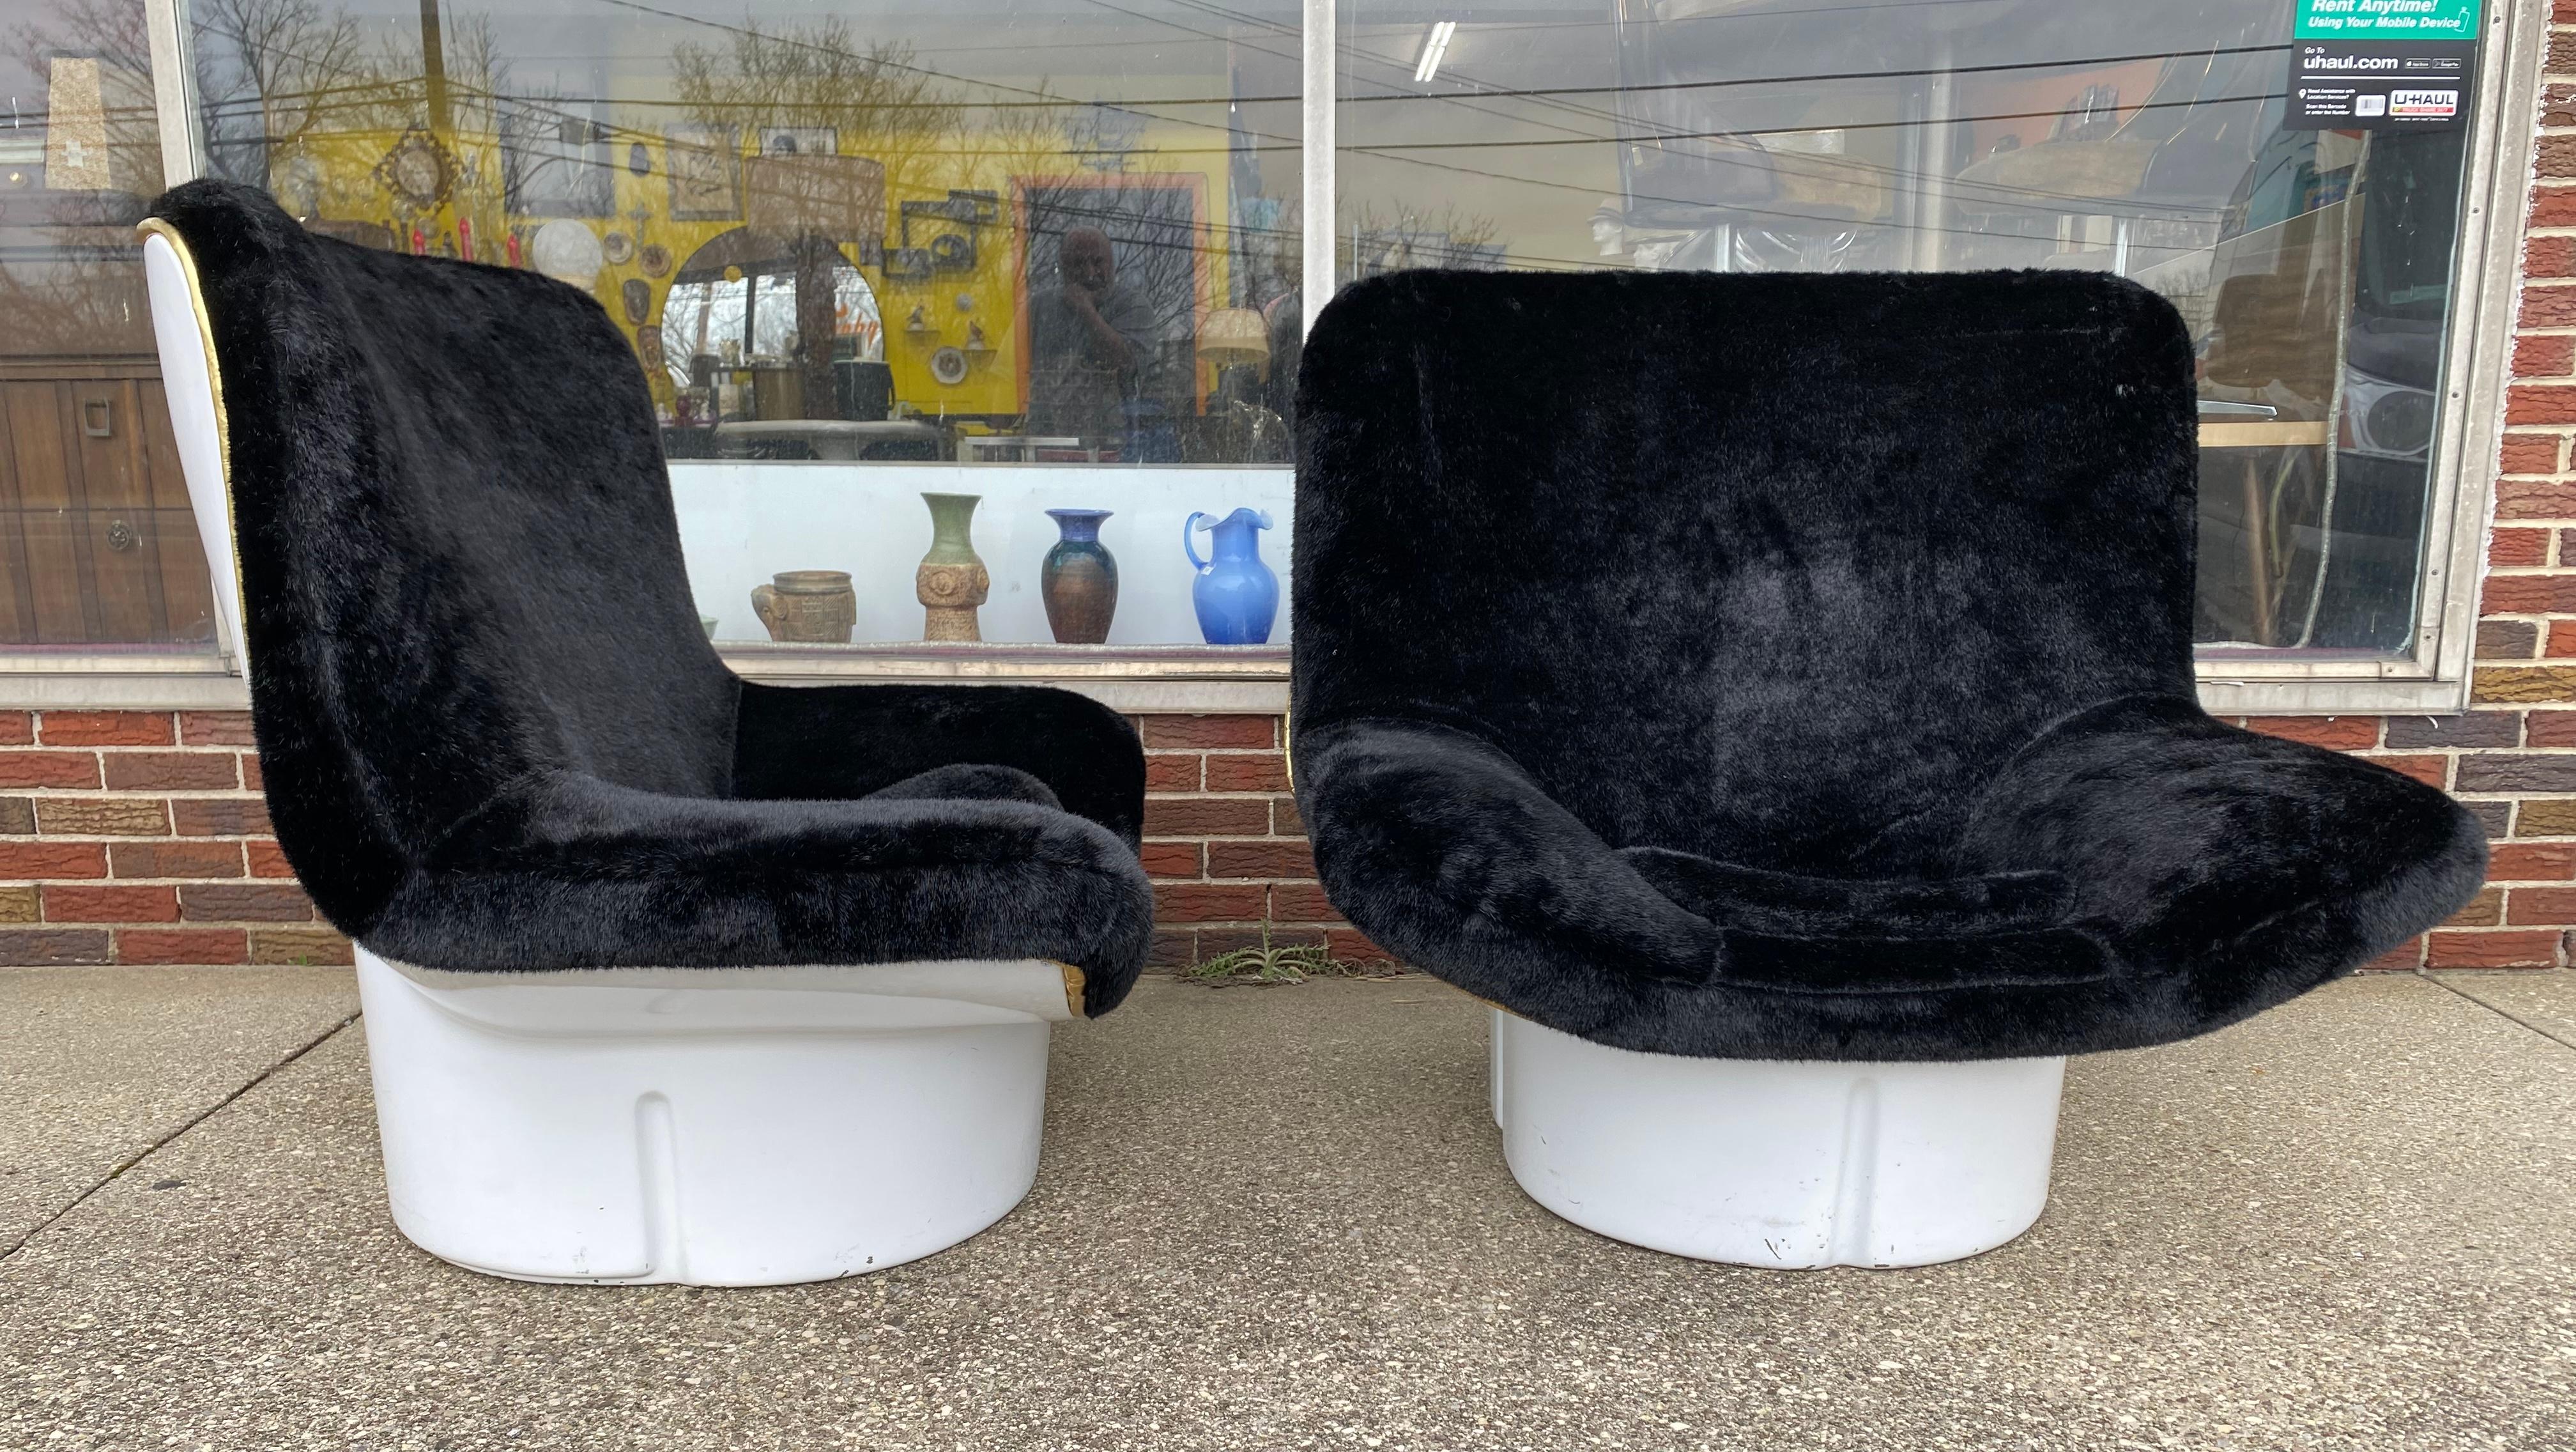 Paire de chaises longues assorties par Titina Ammanati et Giam Paolo Vitelli pour Comfort, Italie, années 1970.

Chaises longues modèle IL Poltrone par AT&T & G.P. Vitelli au début des années 1970, fait partie de la série comfort 175. Fabriqué en